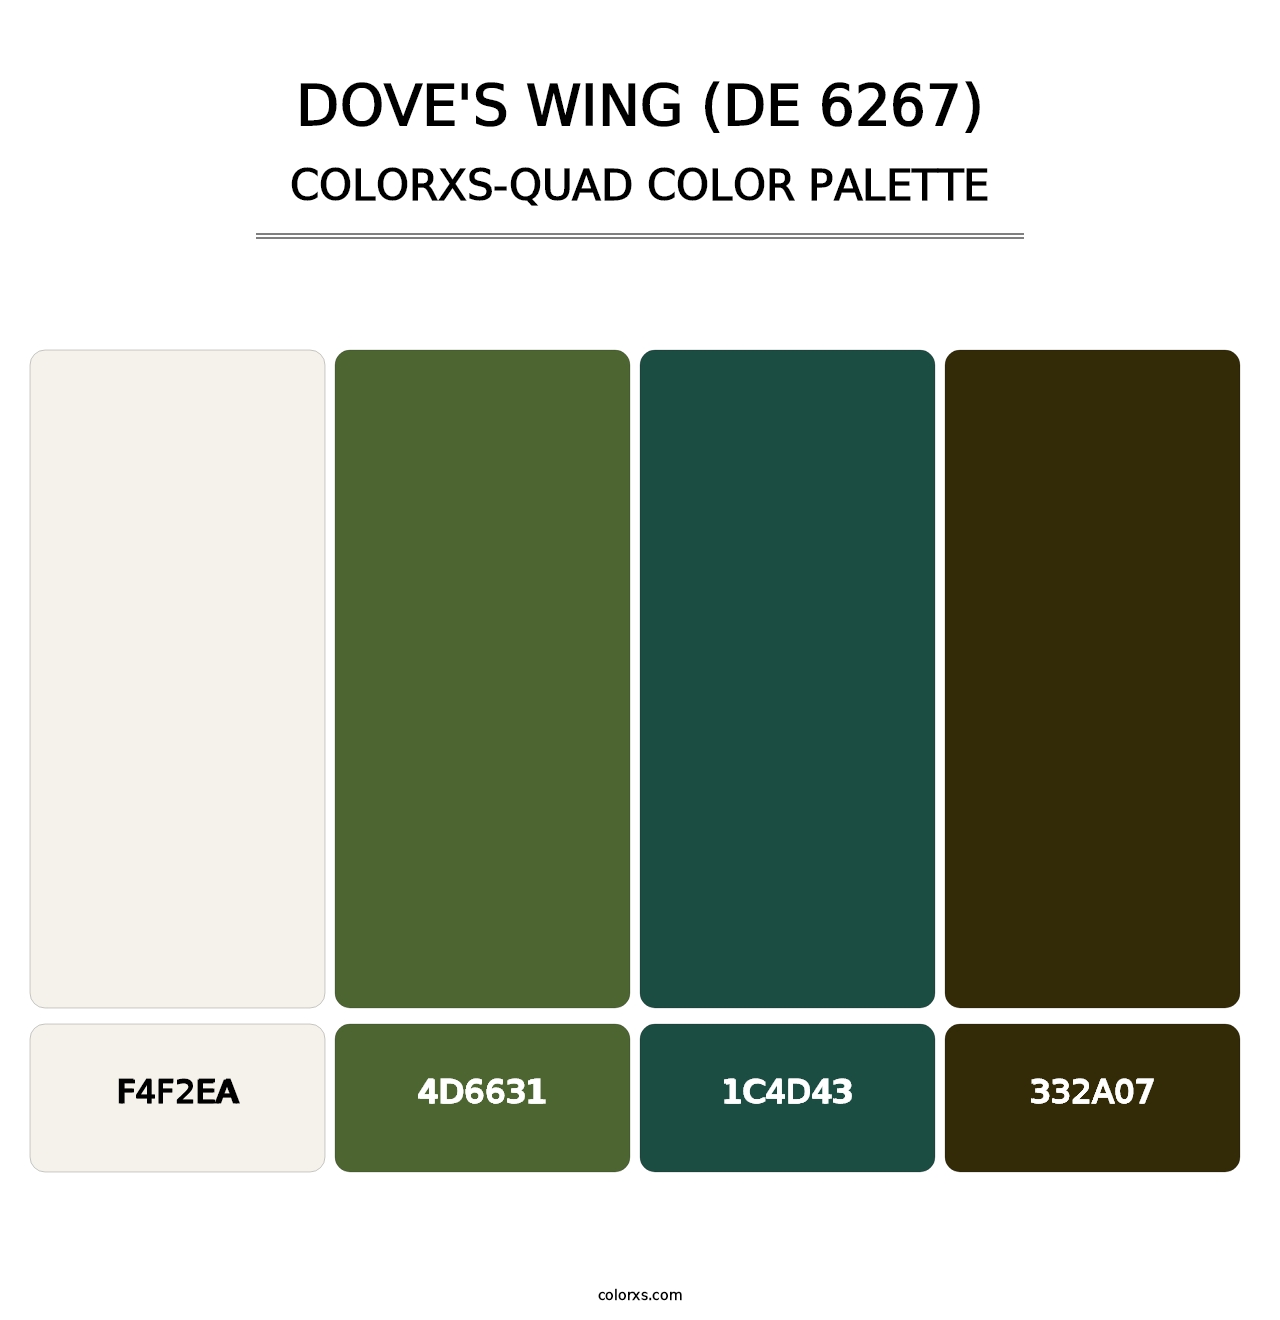 Dove's Wing (DE 6267) - Colorxs Quad Palette